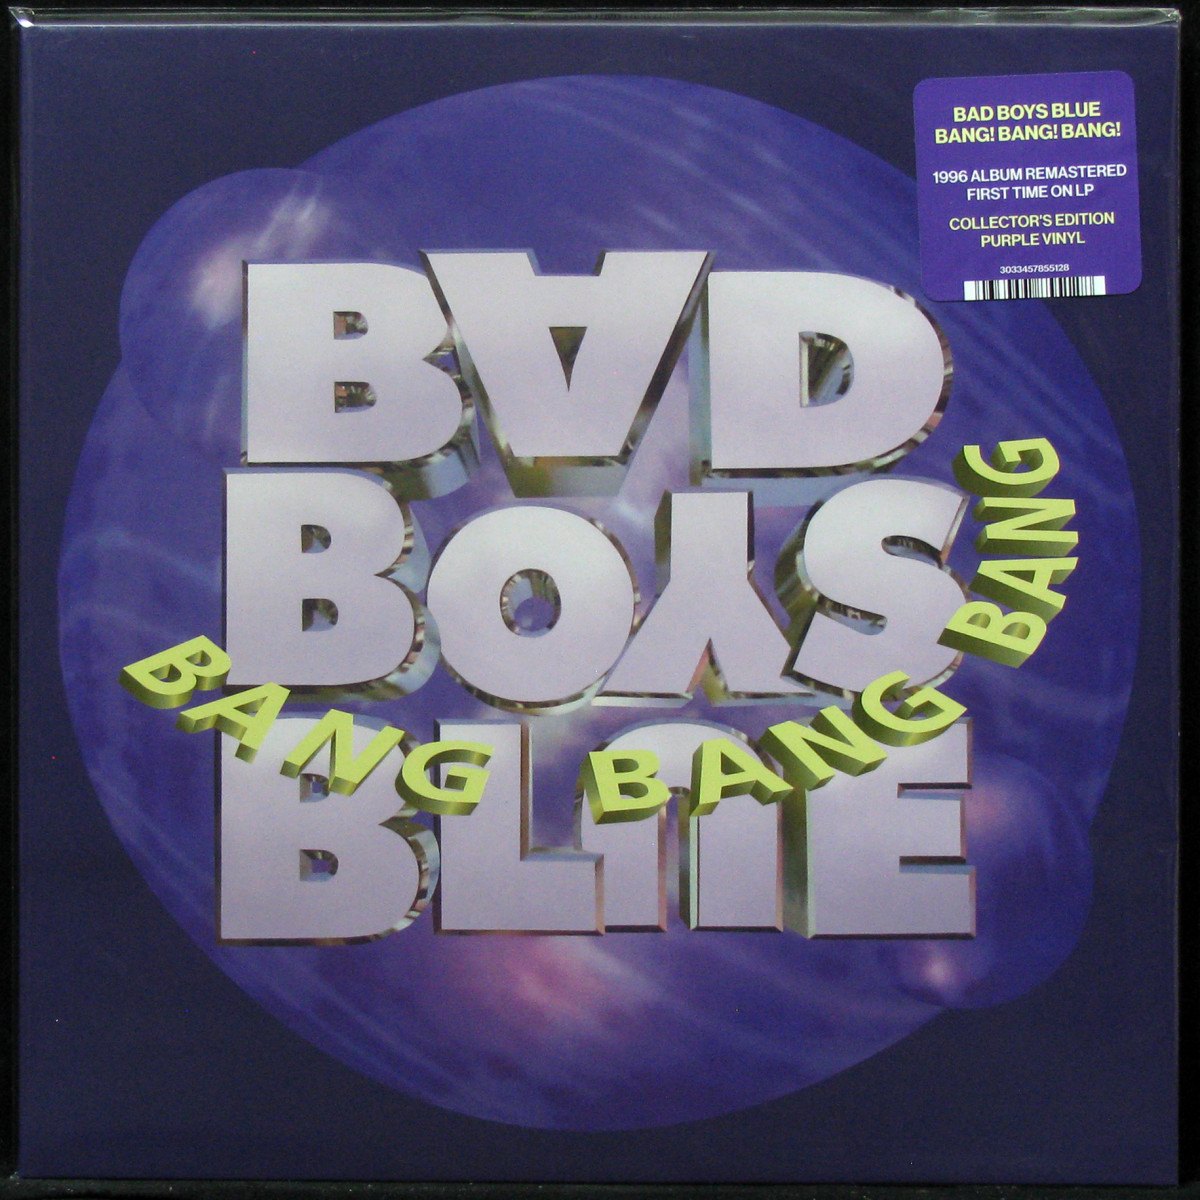 Bang bad. Bad boys Blue 1996. Bad boys Blue Bang. Обложка альбома Bang. Bad boys Blue Bang Bang Bang обложки альбомов.